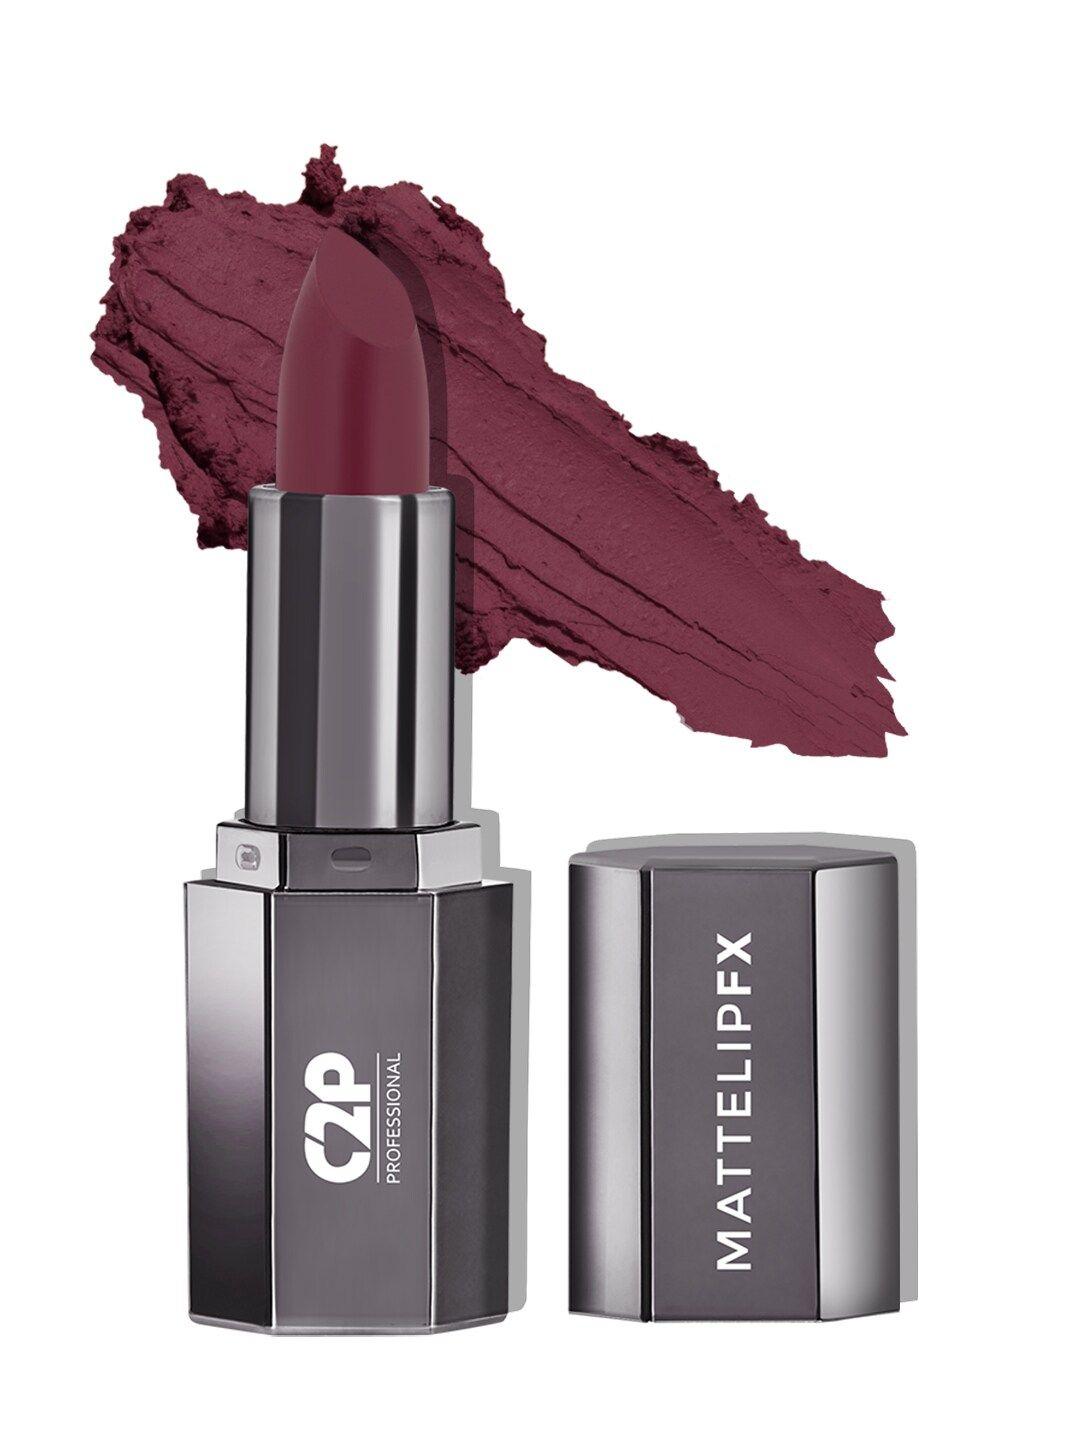 c2p professional makeup mattelipfx long-lasting lipstick - faboulous 18